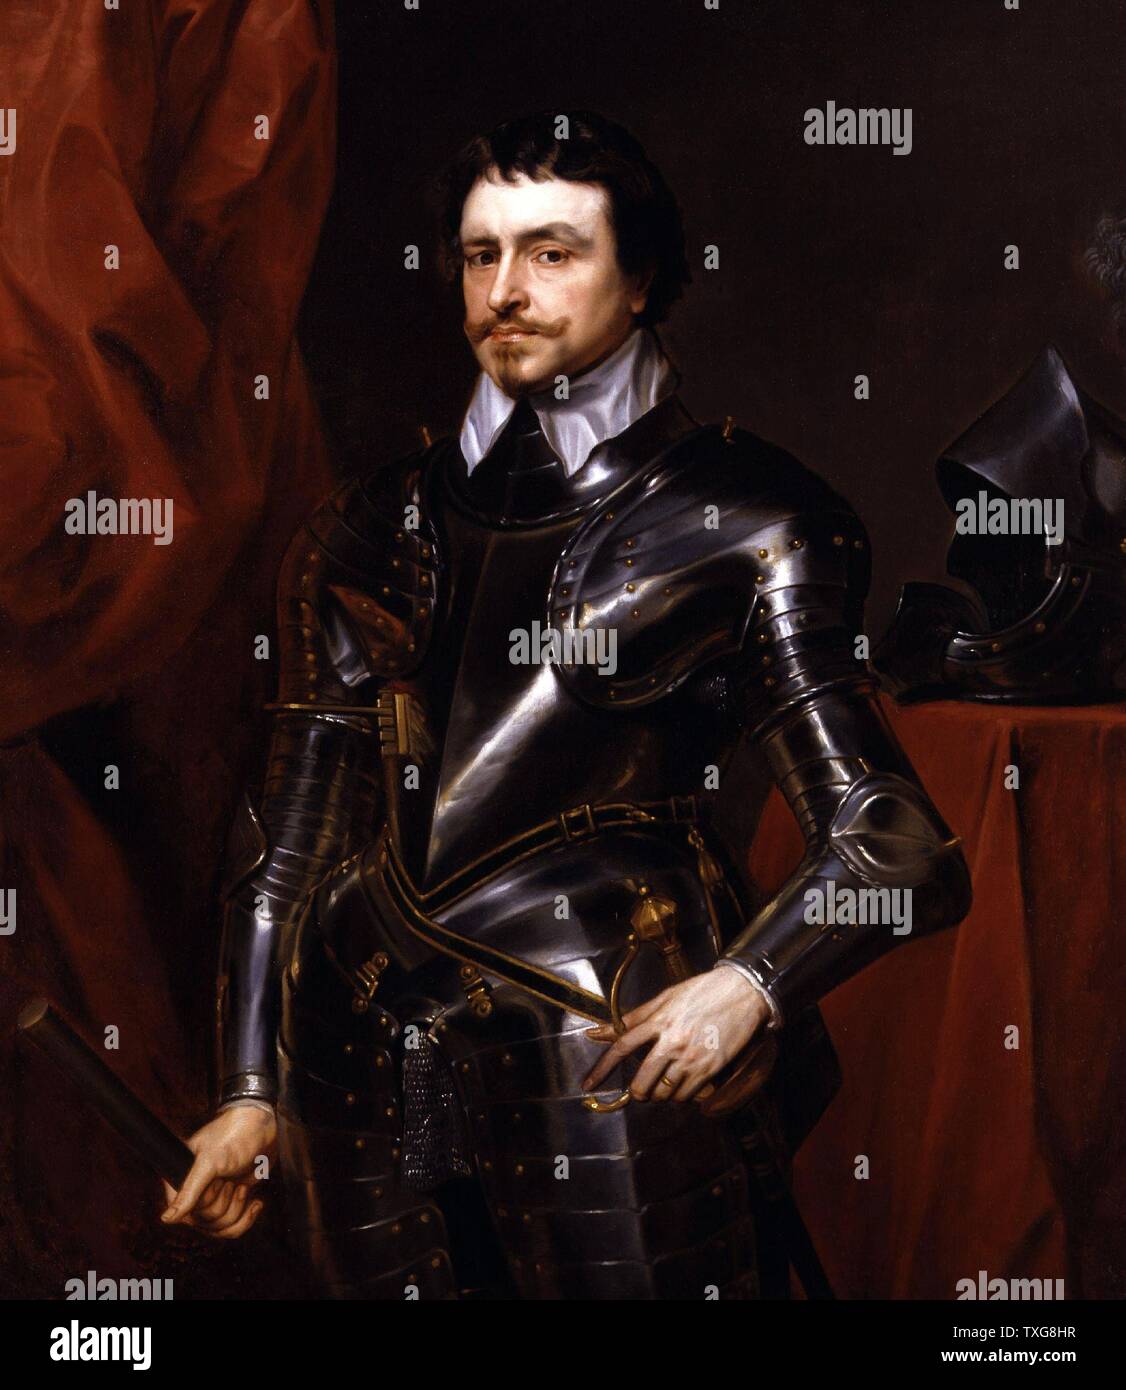 Sir Anthony Van Dyck école flamande Thomas Wentworth, comte de Strafford d'État anglais, une figure majeure dans les événements menant à la Guerre Civile Anglaise Banque D'Images